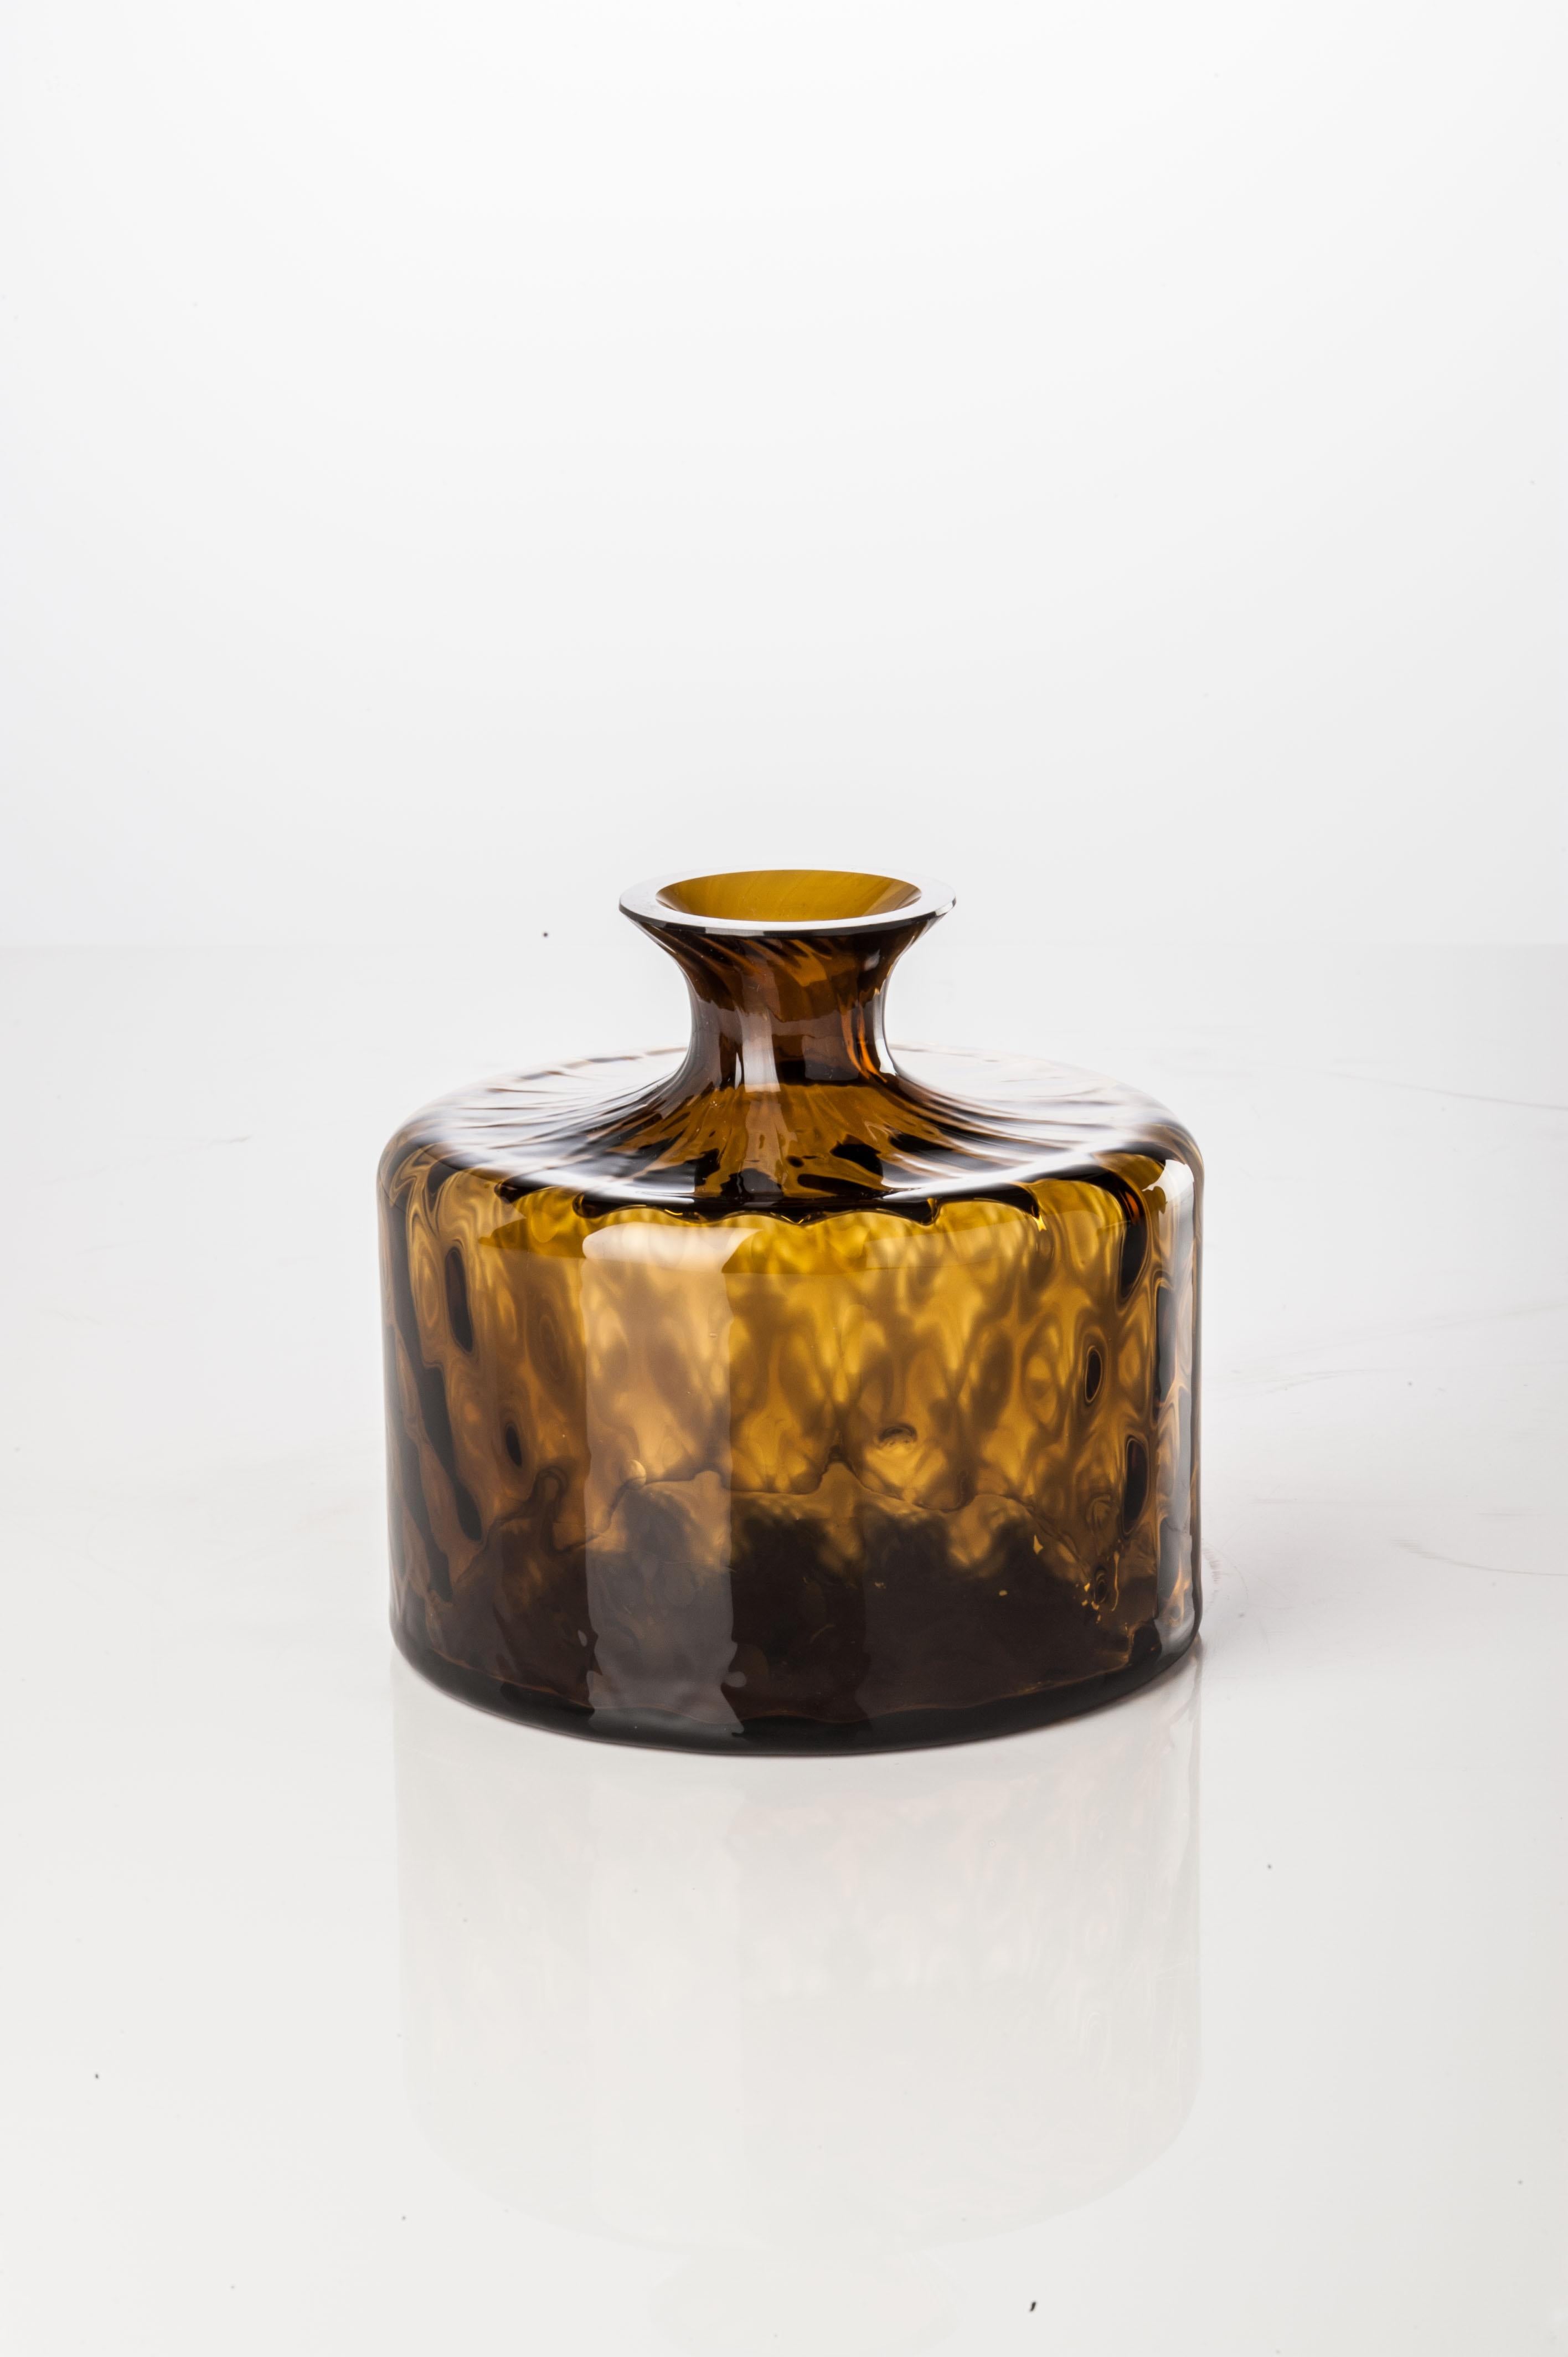 La collection de vases en verre Monofiore Carnevale, conçue et fabriquée par Venini, comprend deux vases de formes différentes. Utilisation intérieure uniquement. 

Dimensions : Ø 13 cm, H 12 cm : Ø 13 cm, H 12 cm.